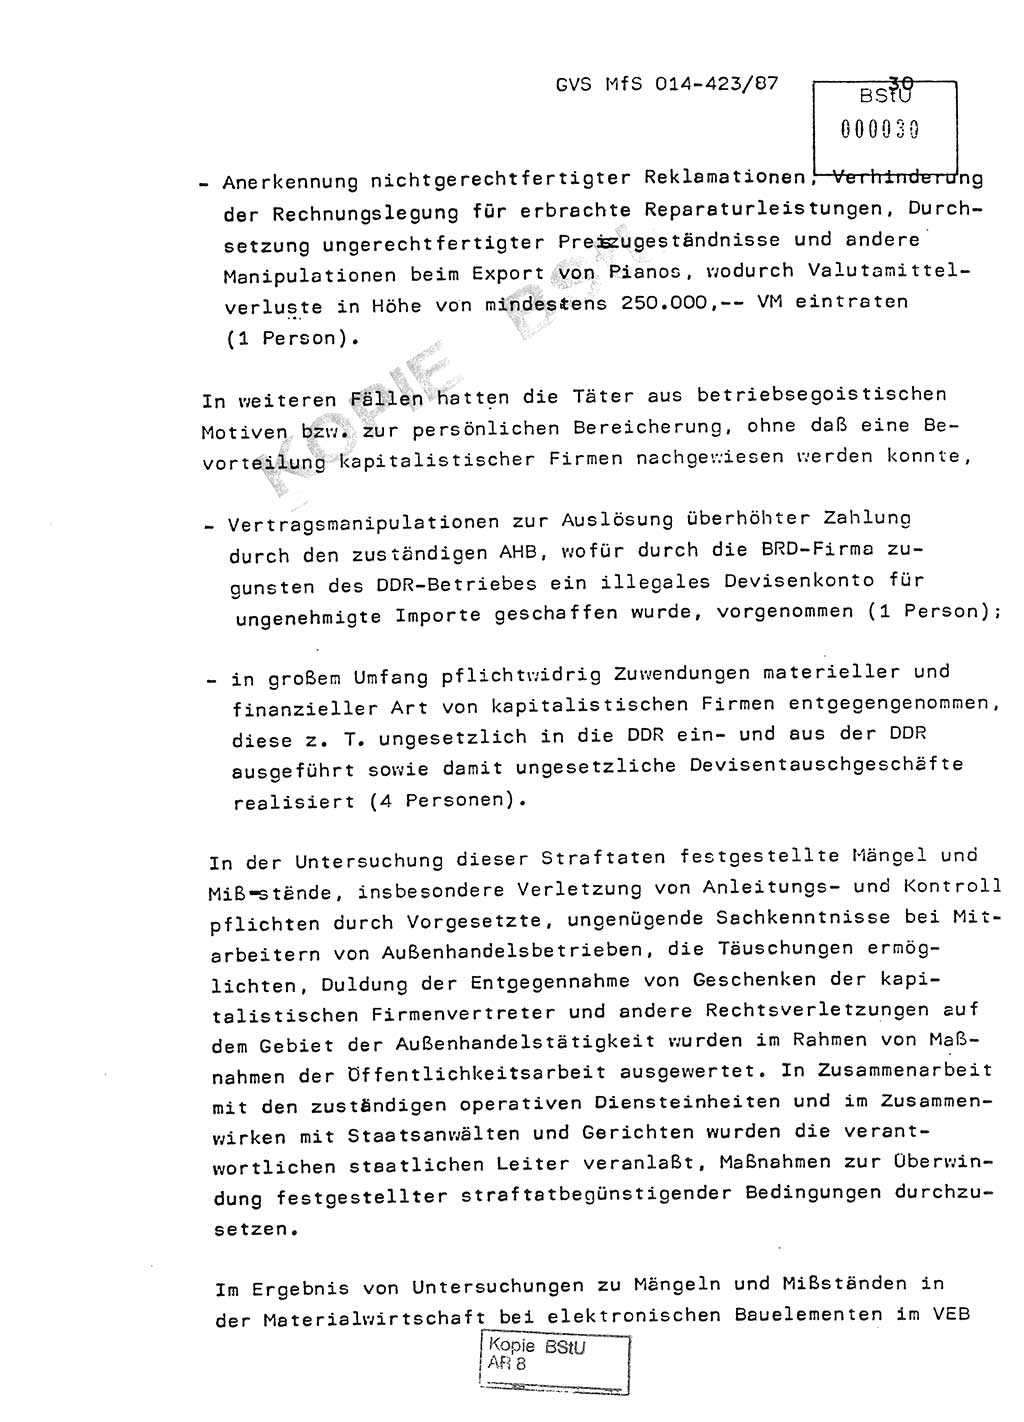 Jahresbericht der Hauptabteilung (HA) Ⅸ 1986, Einschätzung der Wirksamkeit der Untersuchungsarbeit im Jahre 1986, Ministerium für Staatssicherheit (MfS) der Deutschen Demokratischen Republik (DDR), Hauptabteilung Ⅸ, Geheime Verschlußsache (GVS) o014-423/87, Berlin 1987, Seite 30 (Einsch. MfS DDR HA Ⅸ GVS o014-423/87 1986, S. 30)